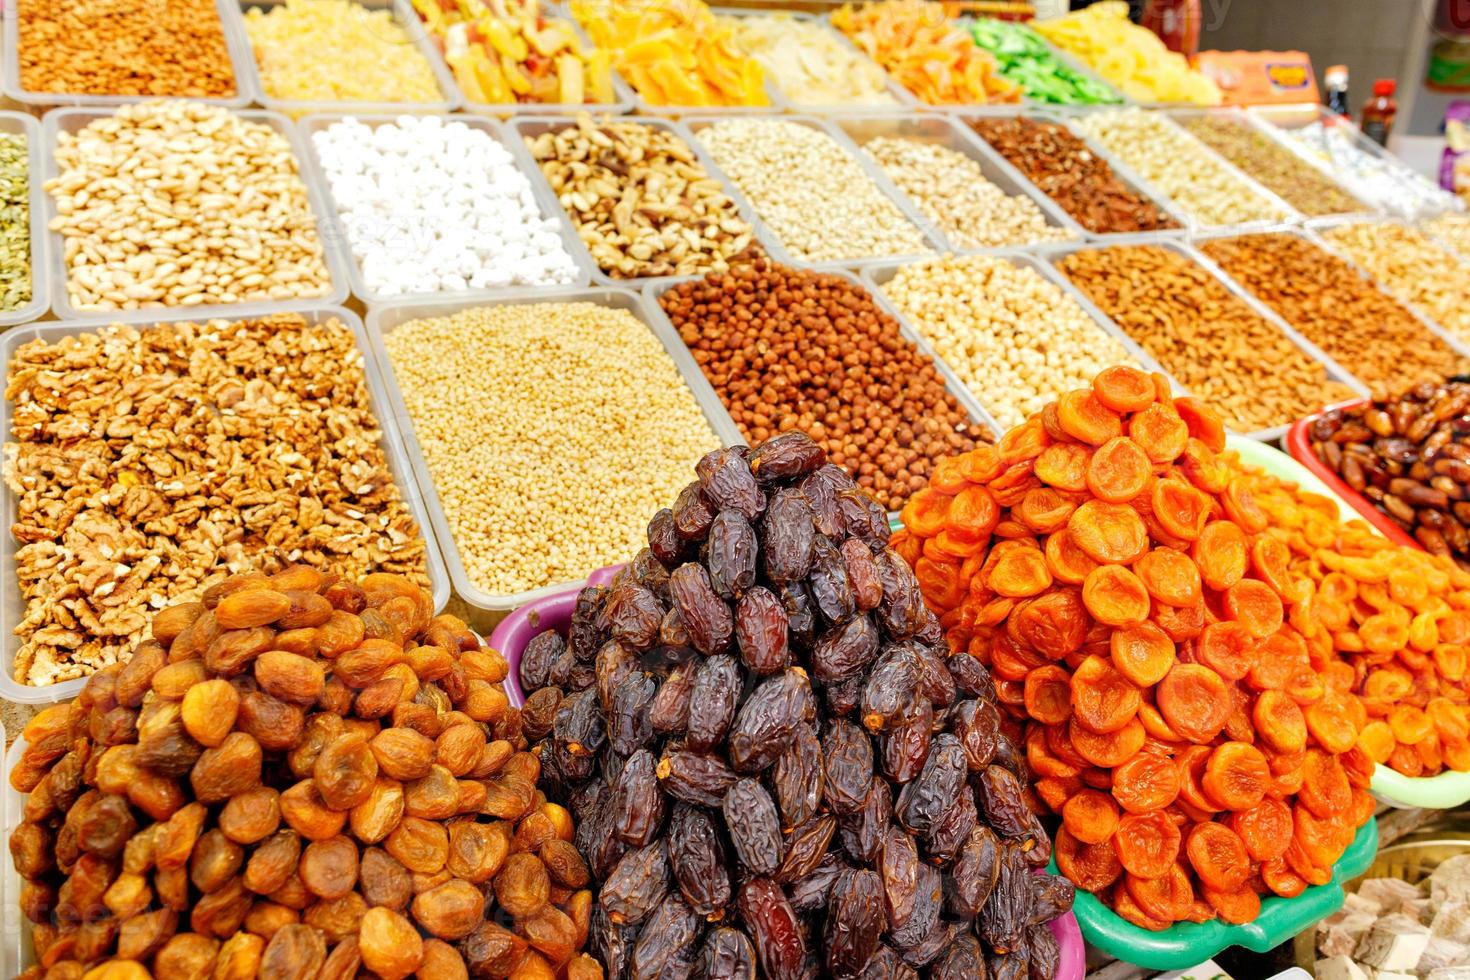 dattes, abricots secs, amandes, noisettes, noix, noix de cajou sont vendus sur le marché. photo